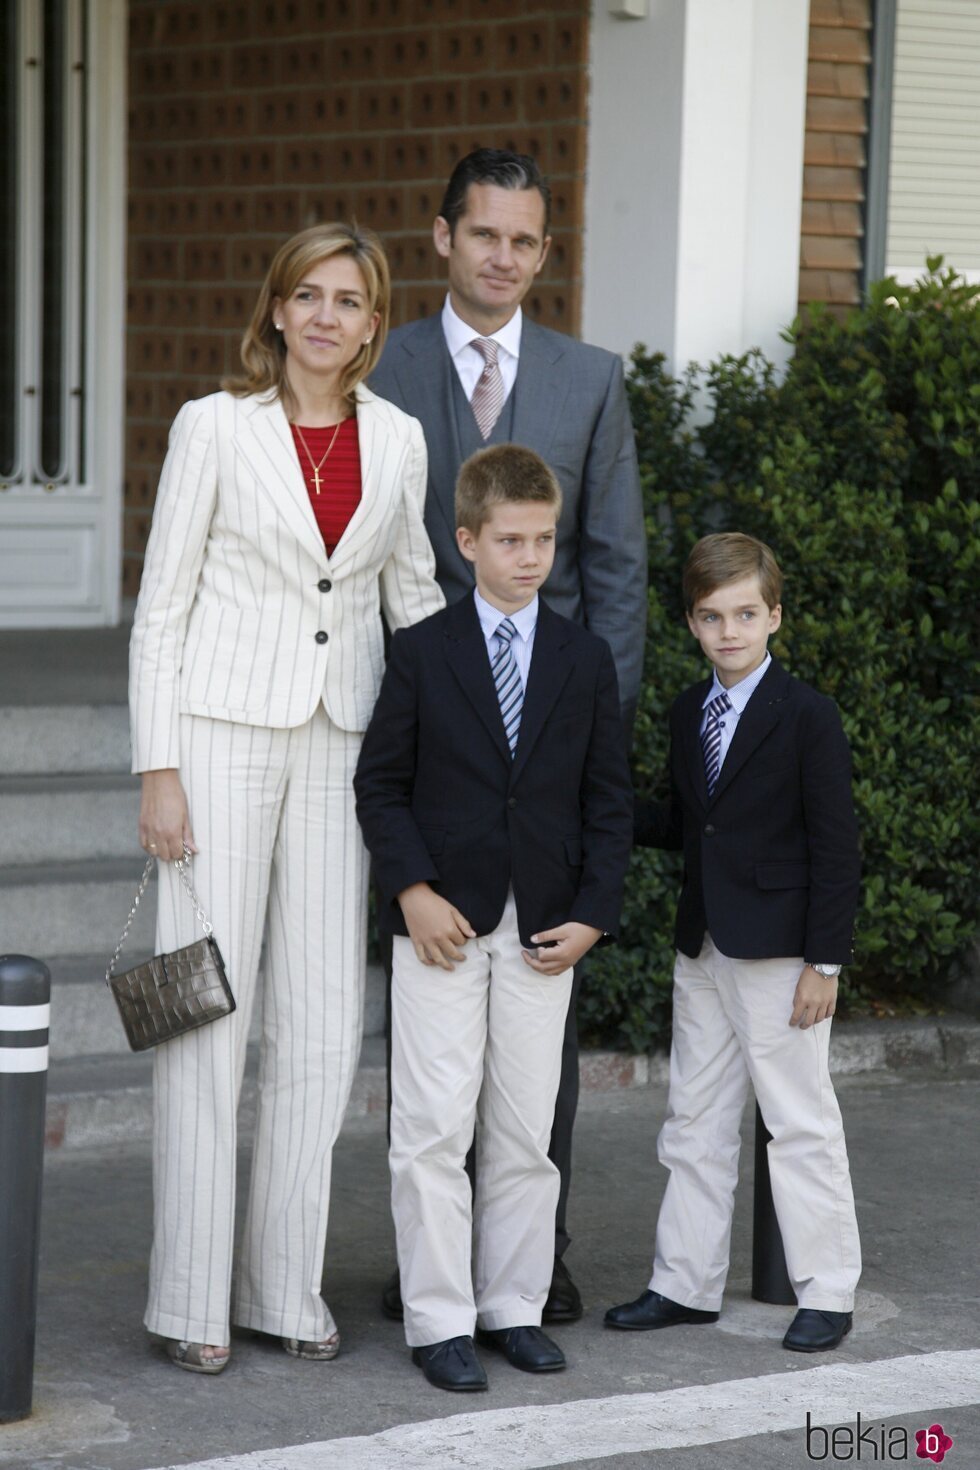 La Infanta Cristina e Iñaki Urdangarin y sus hijos Juan y Pablo Urdangarin en la Comunión de Victoria Federica